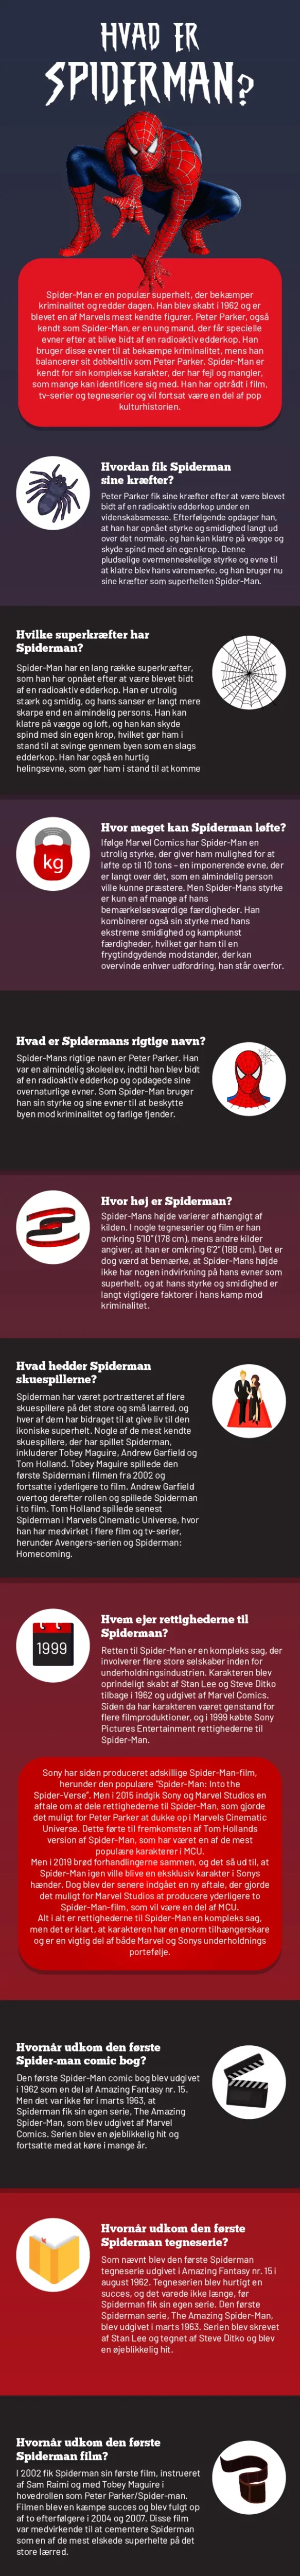 Hvad er spiderman